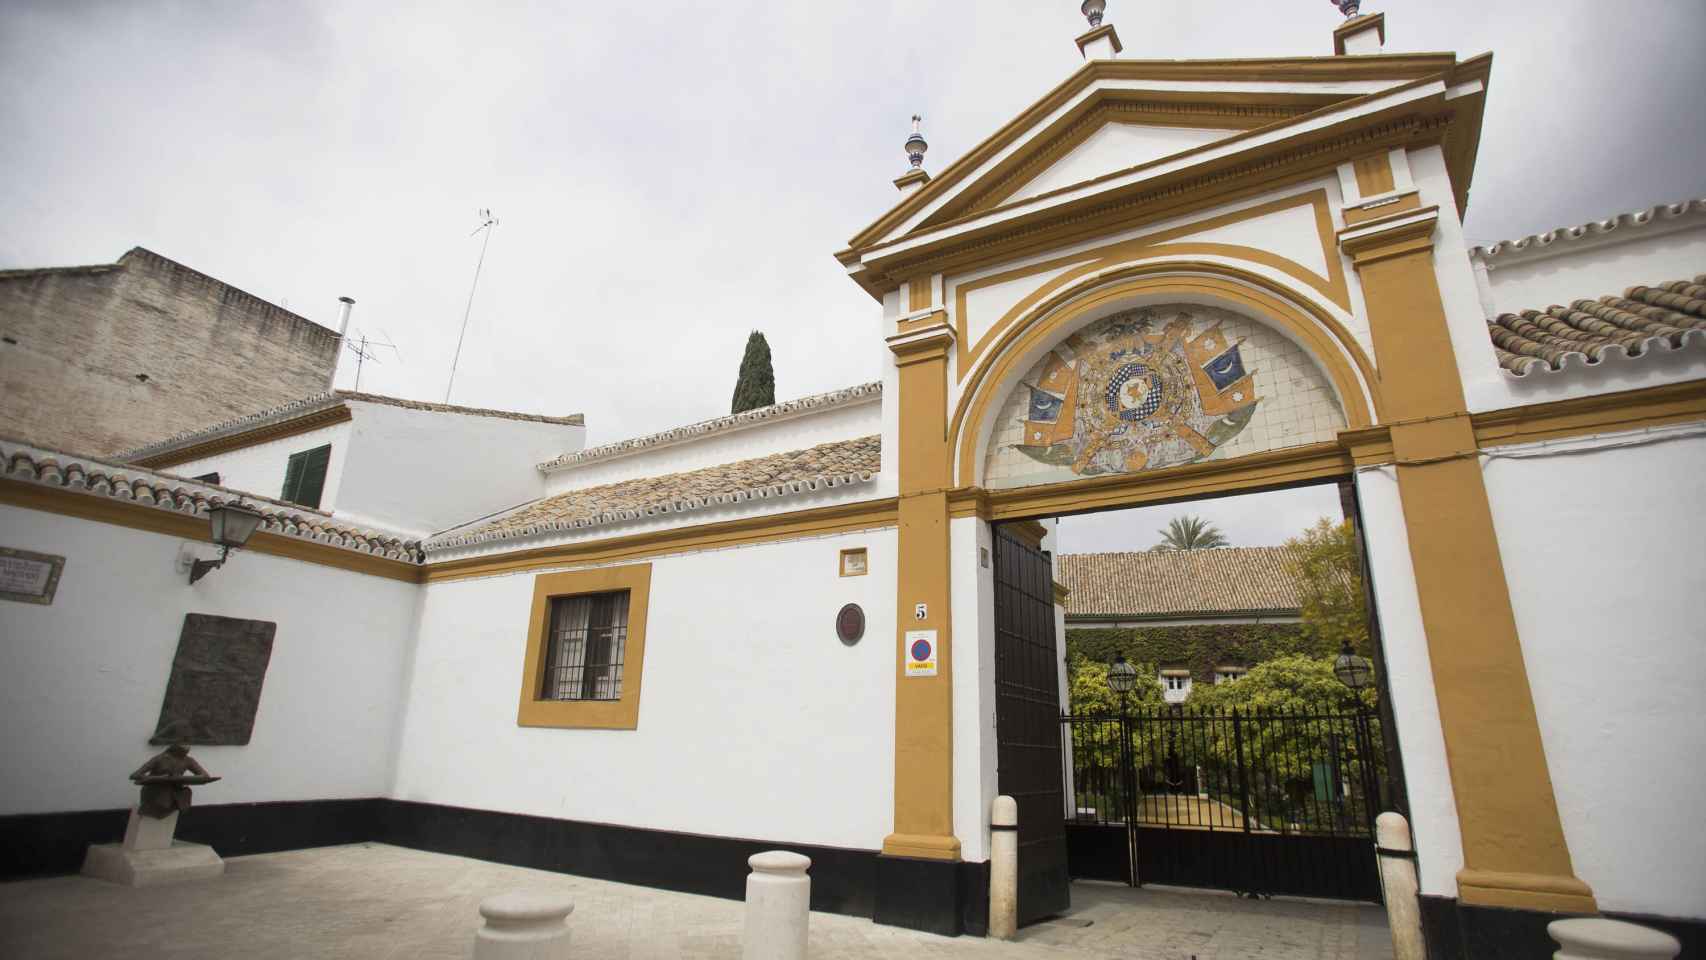 Entrada principal del Palacio de Las Dueñas (Sevilla)